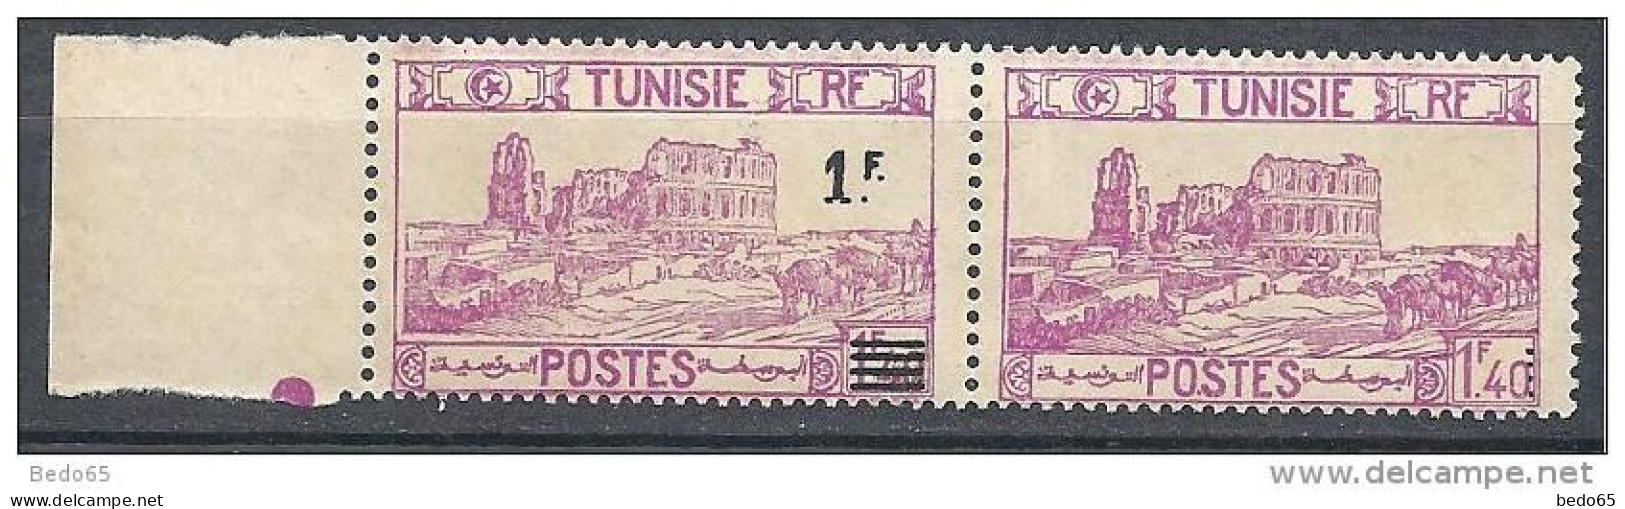 TUNISIE N° 225d VARIETEE SURCHARGE TENANT A UN NON SURCHARGE NEUF** TTB COTE Yvert 585€ / Signé / 2 SCANS - Neufs